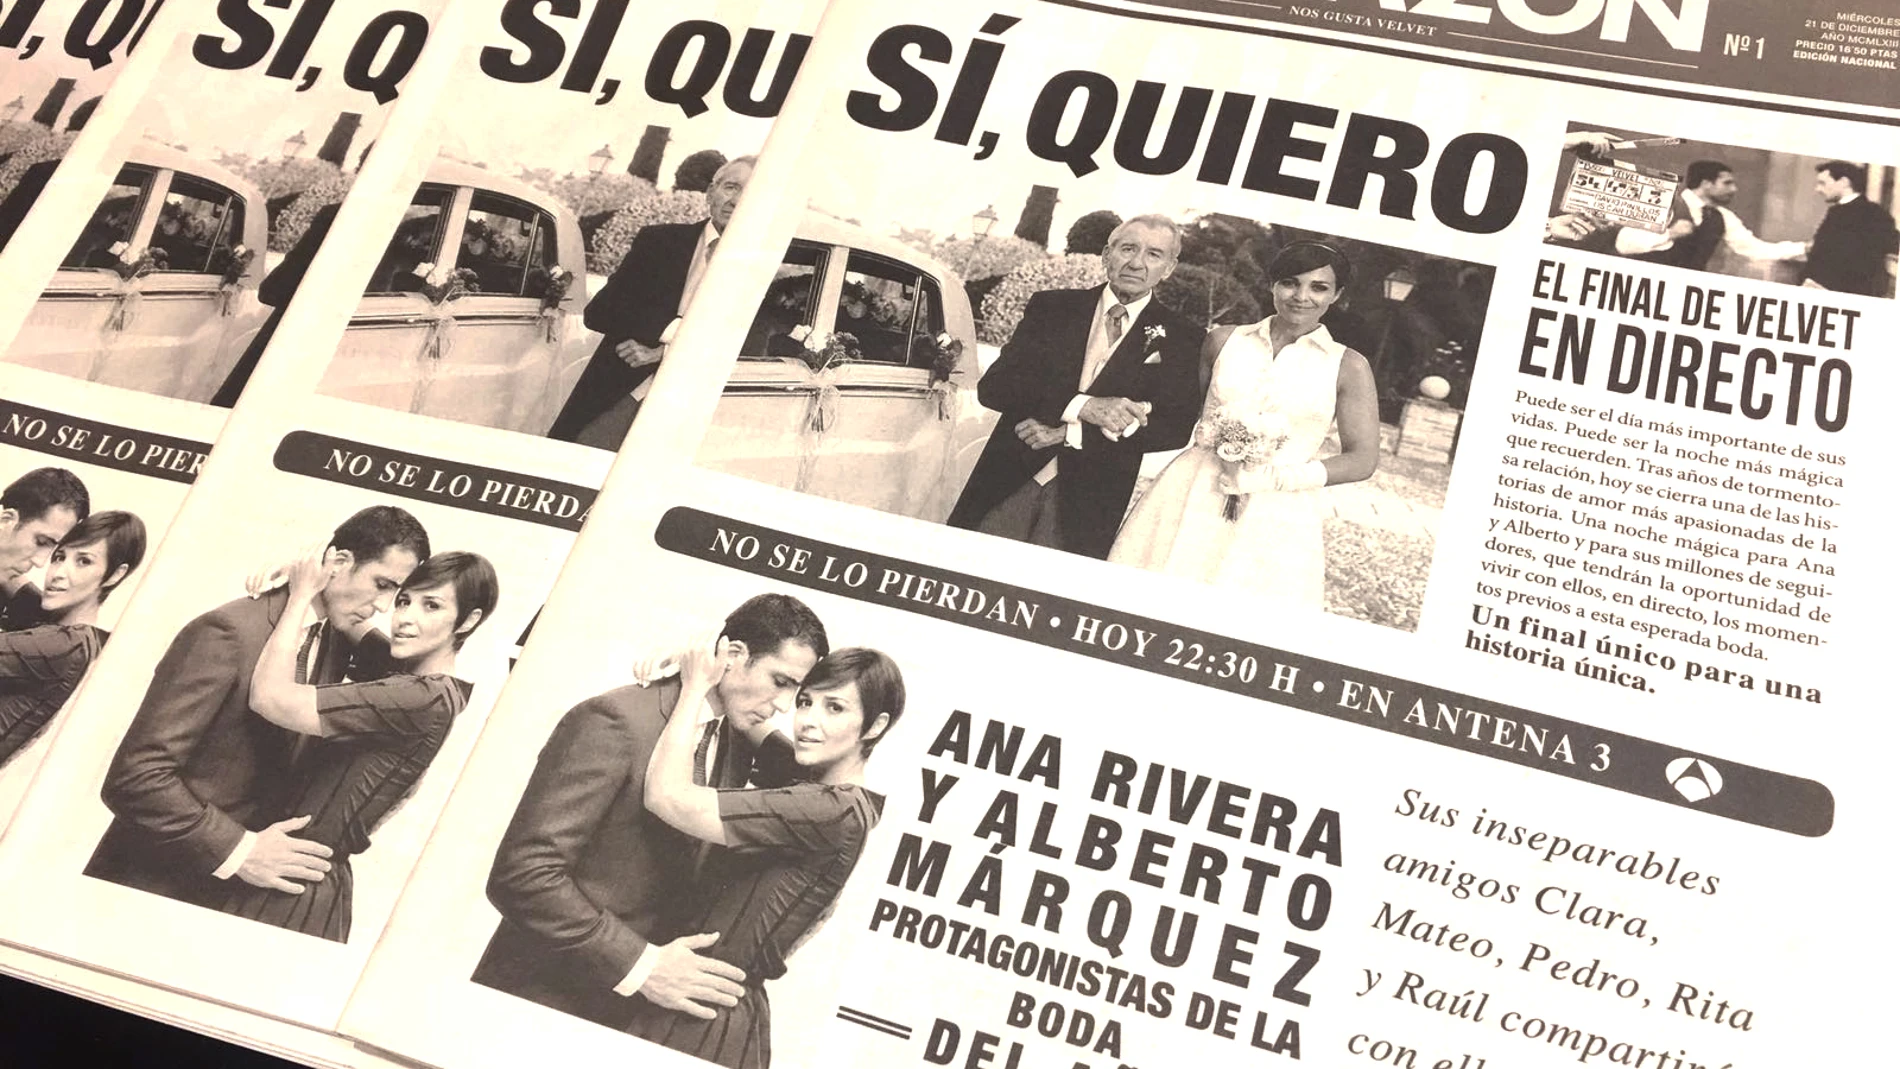 La gran boda de Alberto y Ana en el final de 'Velvet', portada de 'La Razón'